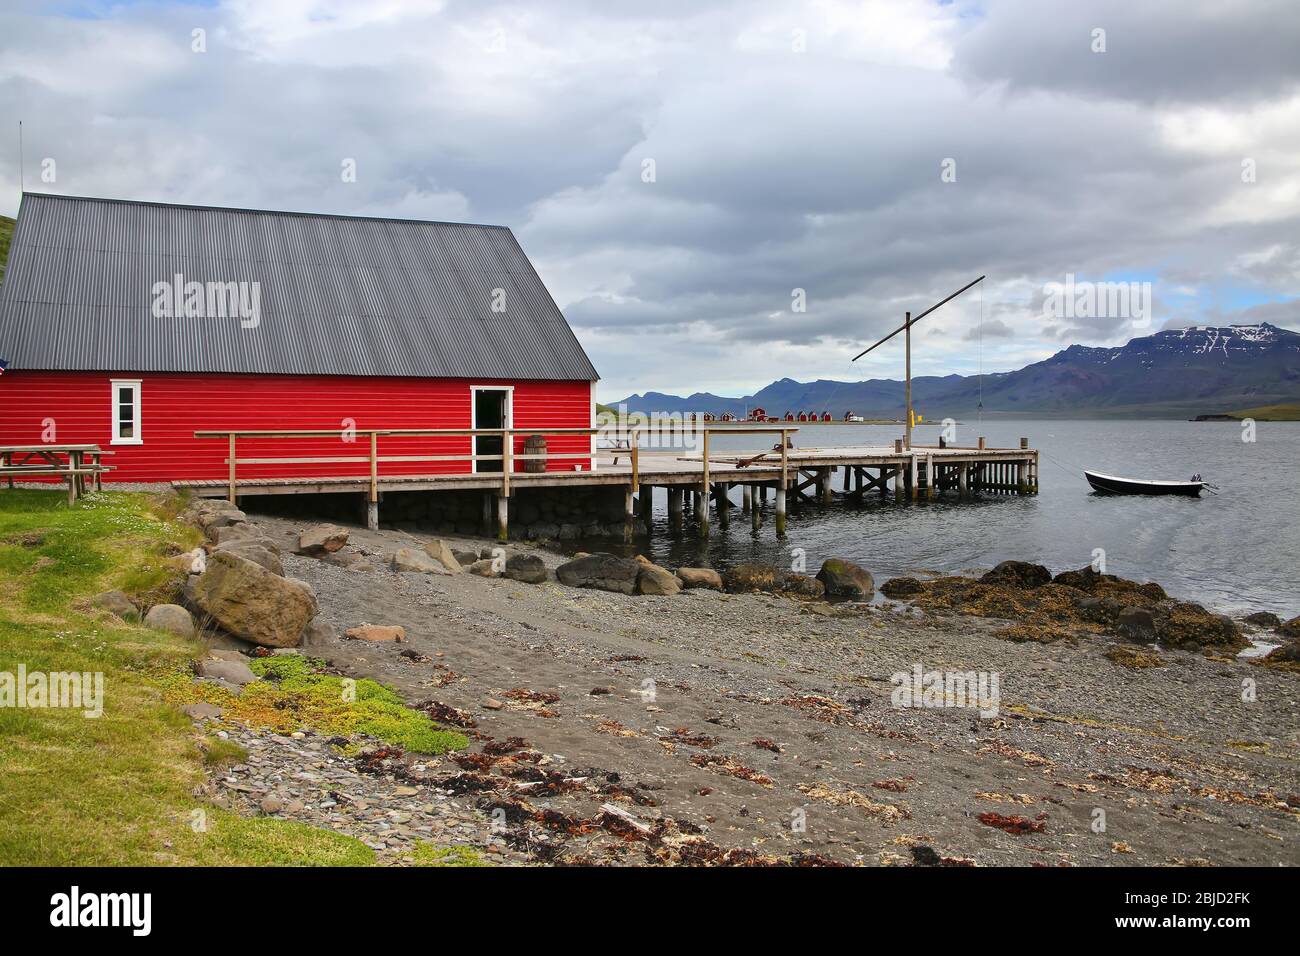 Vista sul fiordo con un molo, tradizionale edificio in legno rosso, barca da pesca, belle montagne e isole sullo sfondo, Eskifjordur, Islanda Foto Stock